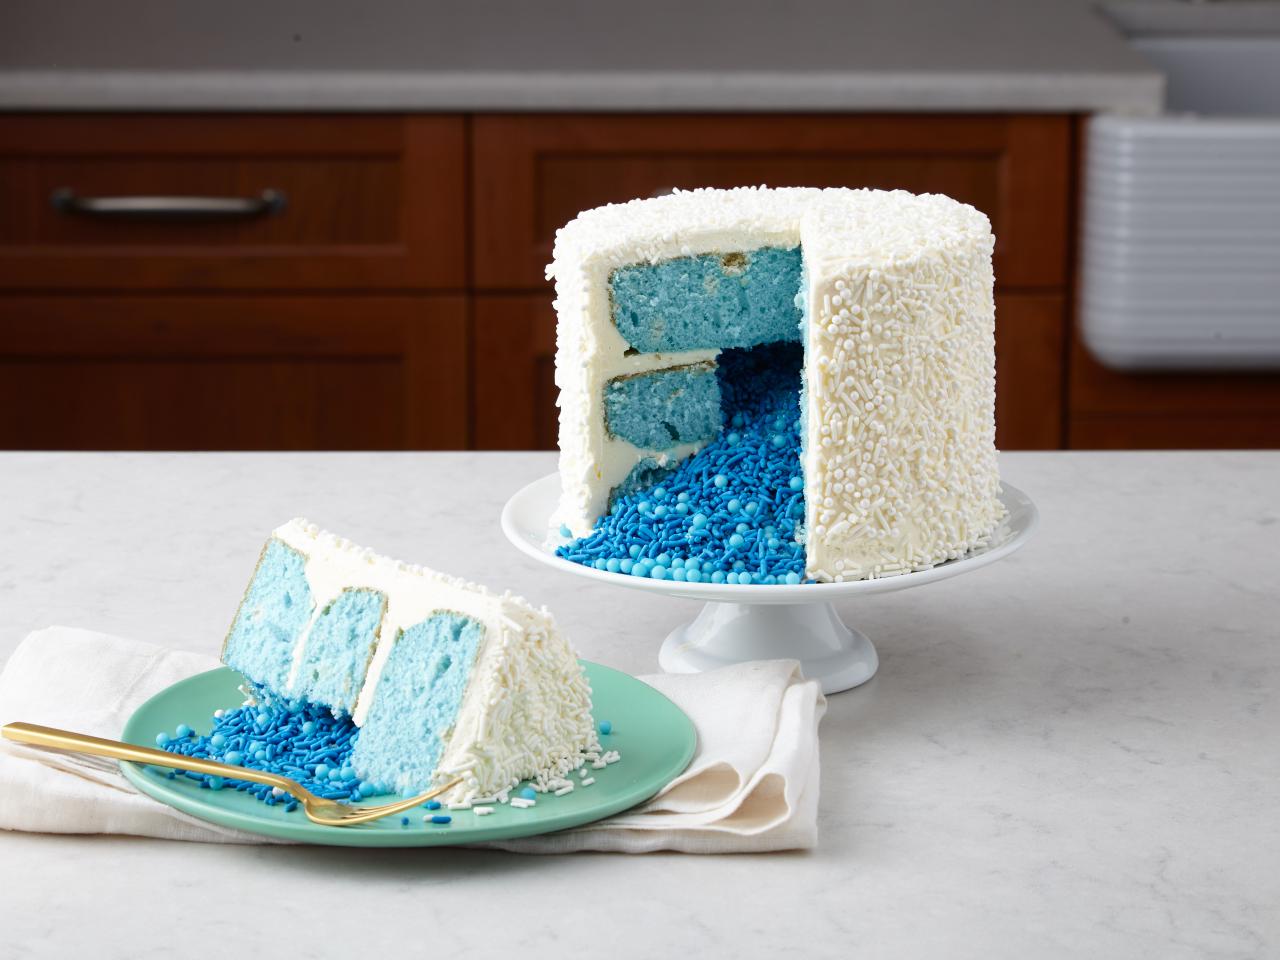 Pink or Blue Fish Gender Reveal Cake Design